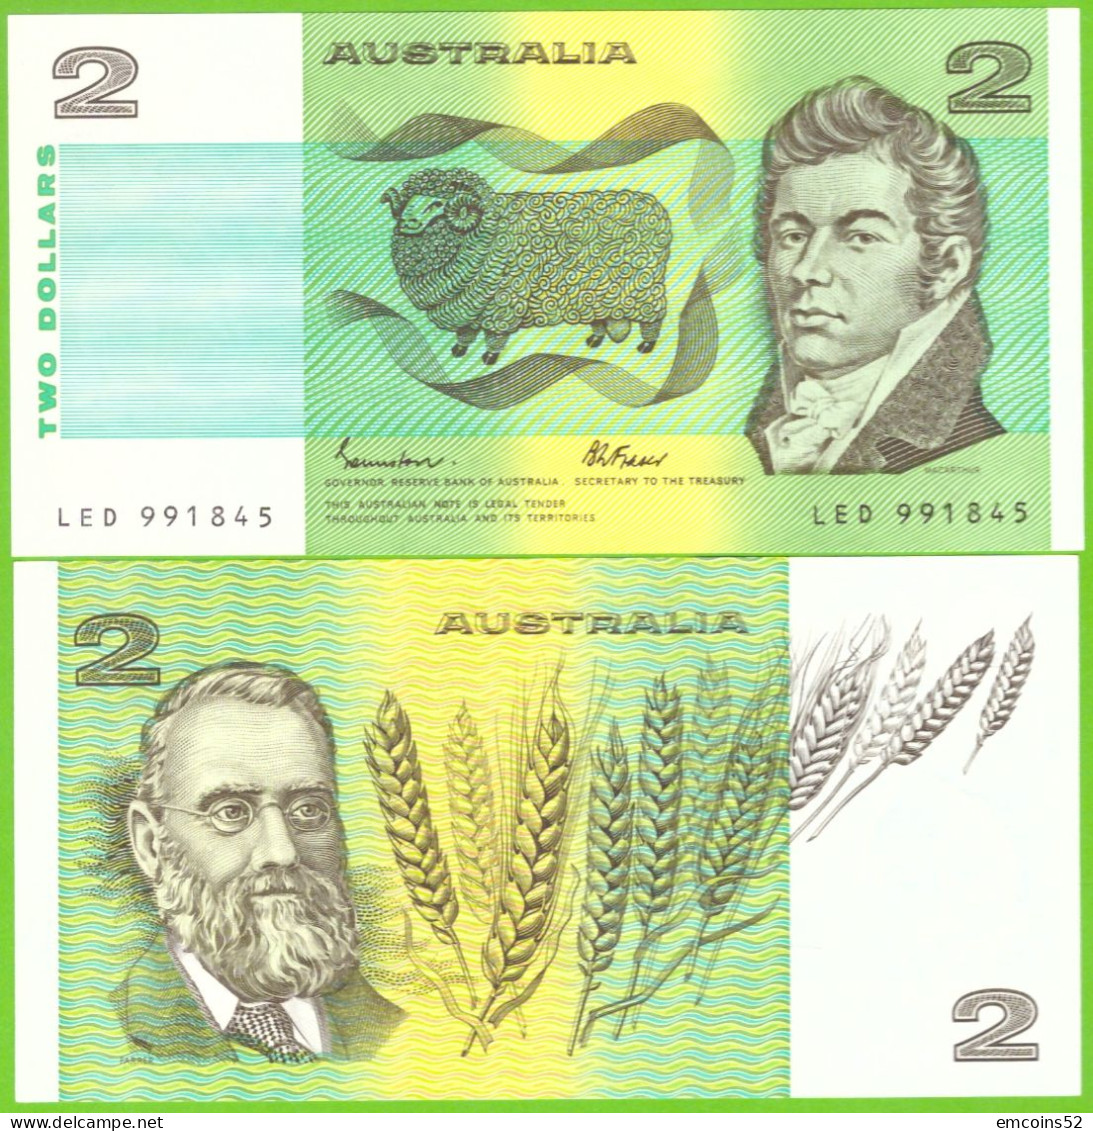 AUSTRALIA 2 DOLLARS 1985 P-43e UNC - 1974-94 Australia Reserve Bank (Banknoten Aus Papier)